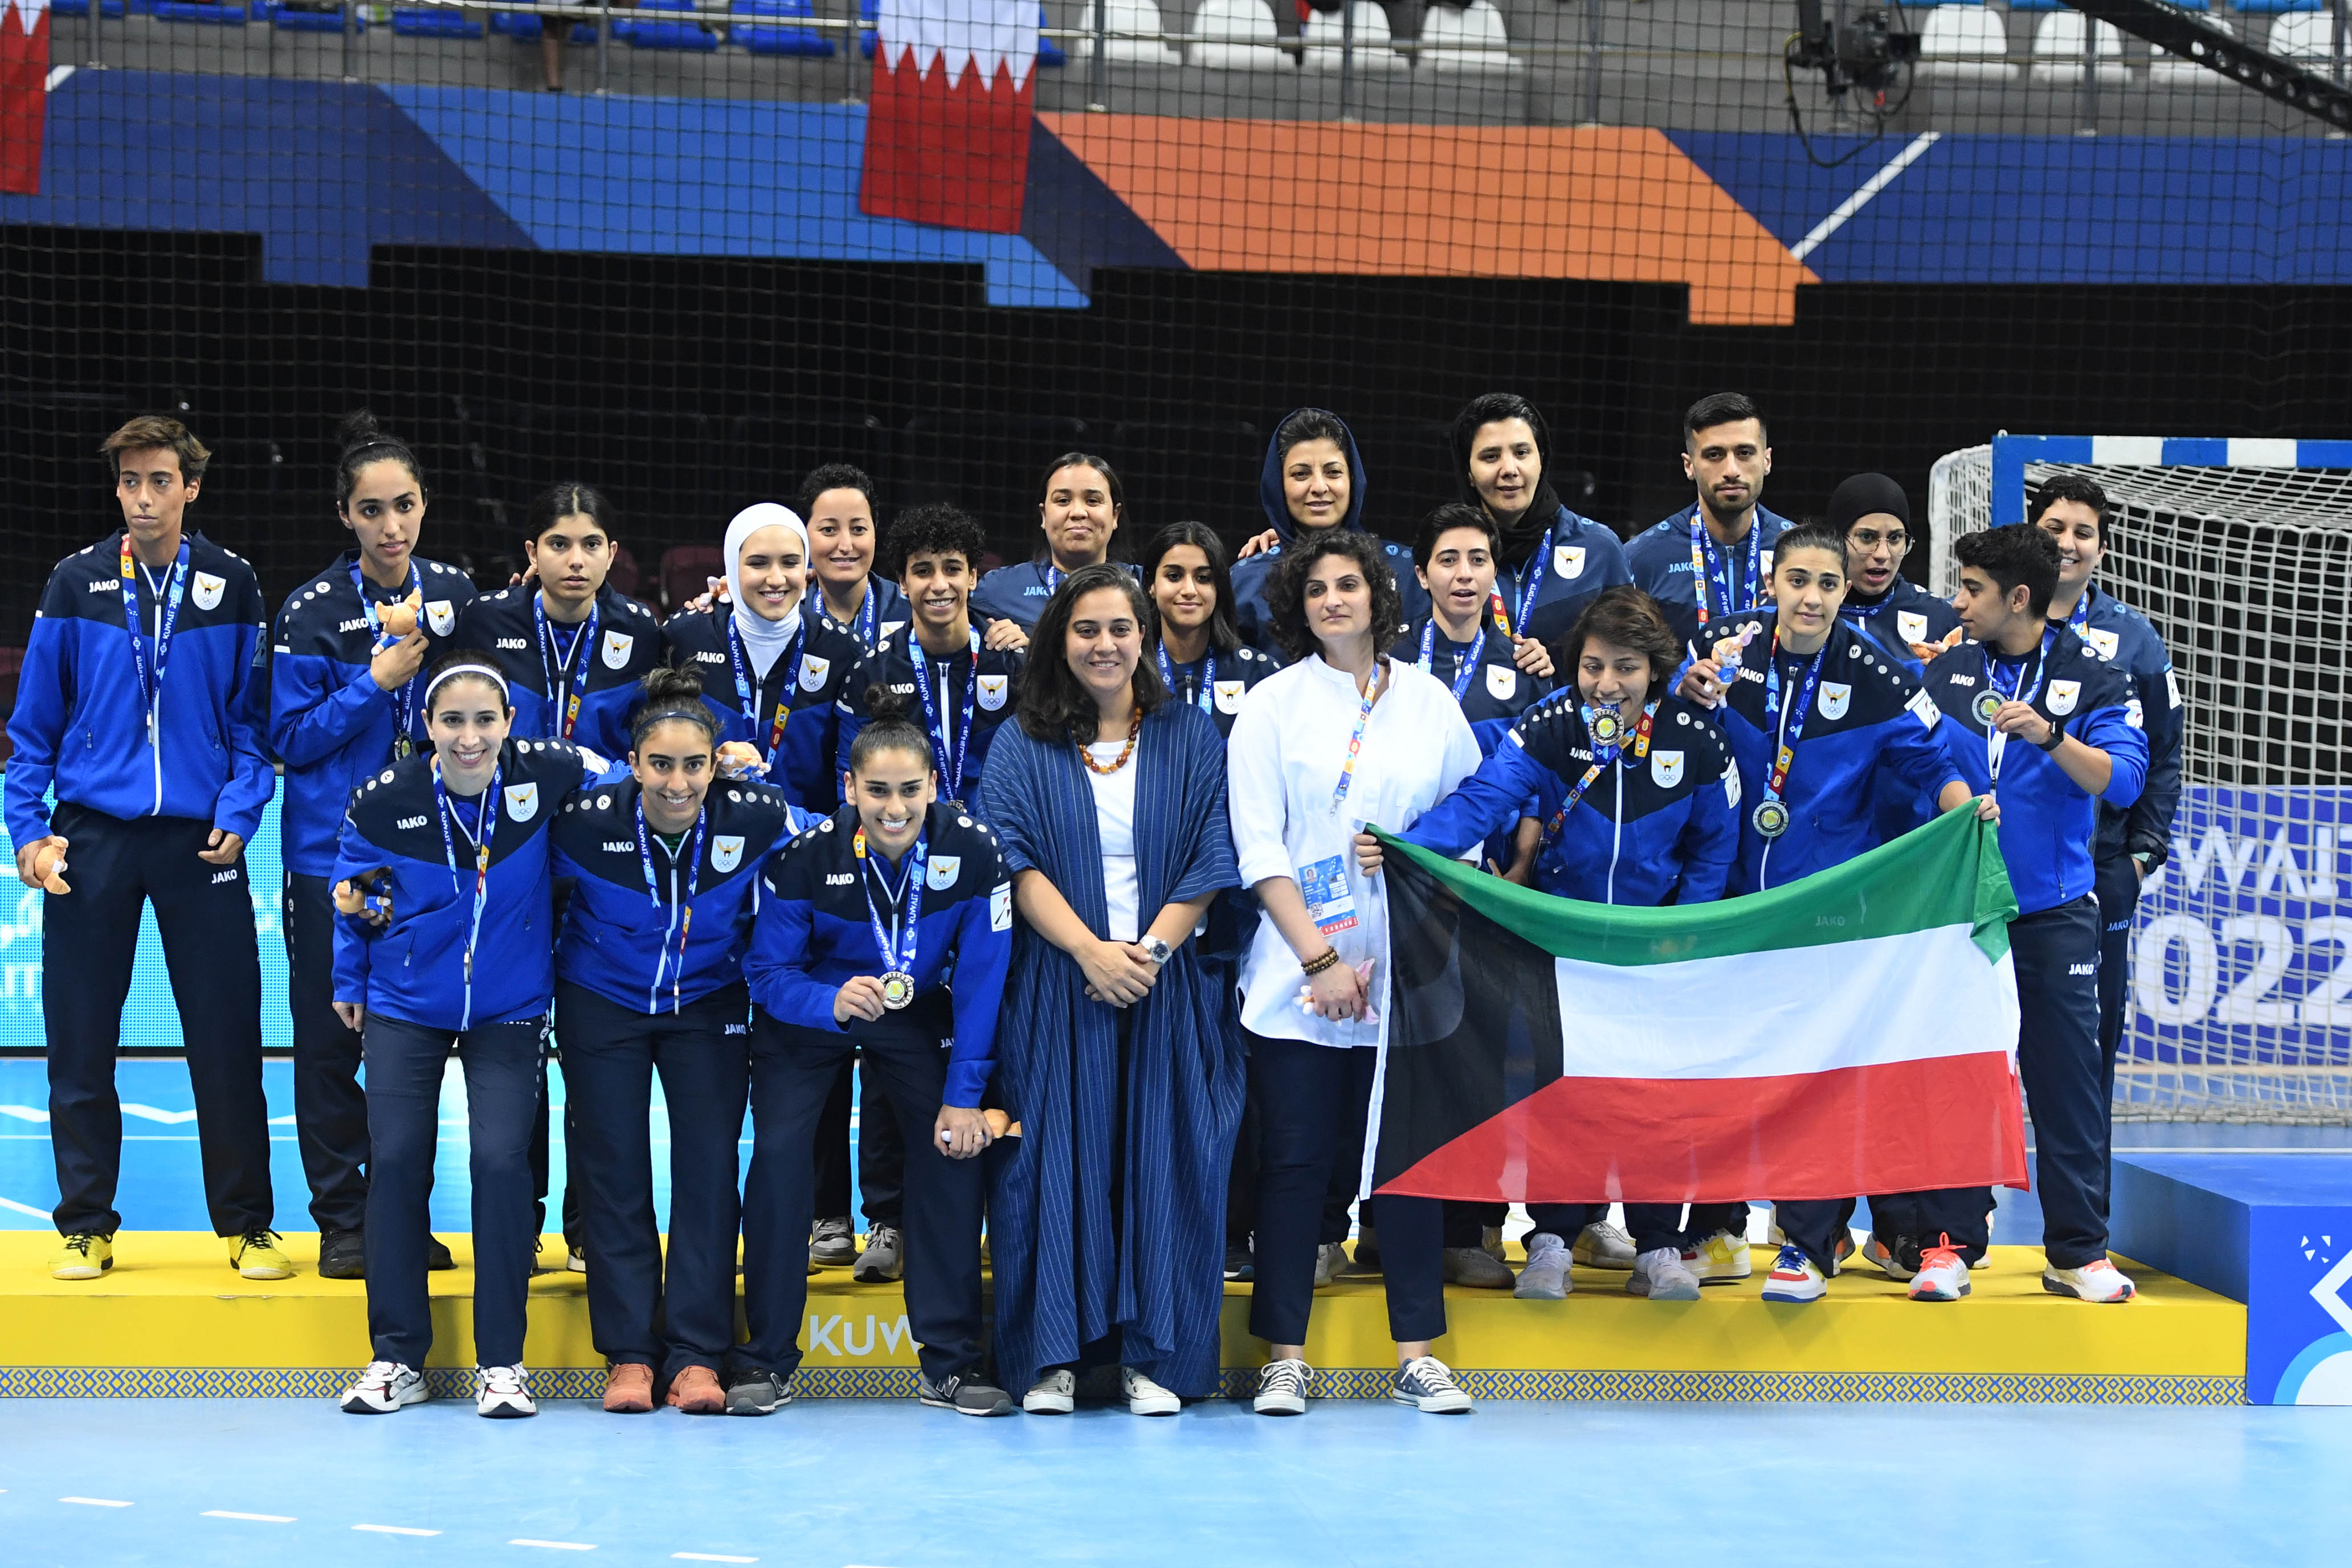 منتخب الكويت لكرة قدم الصالات (سيدات) يحقق الميدالية الفضية